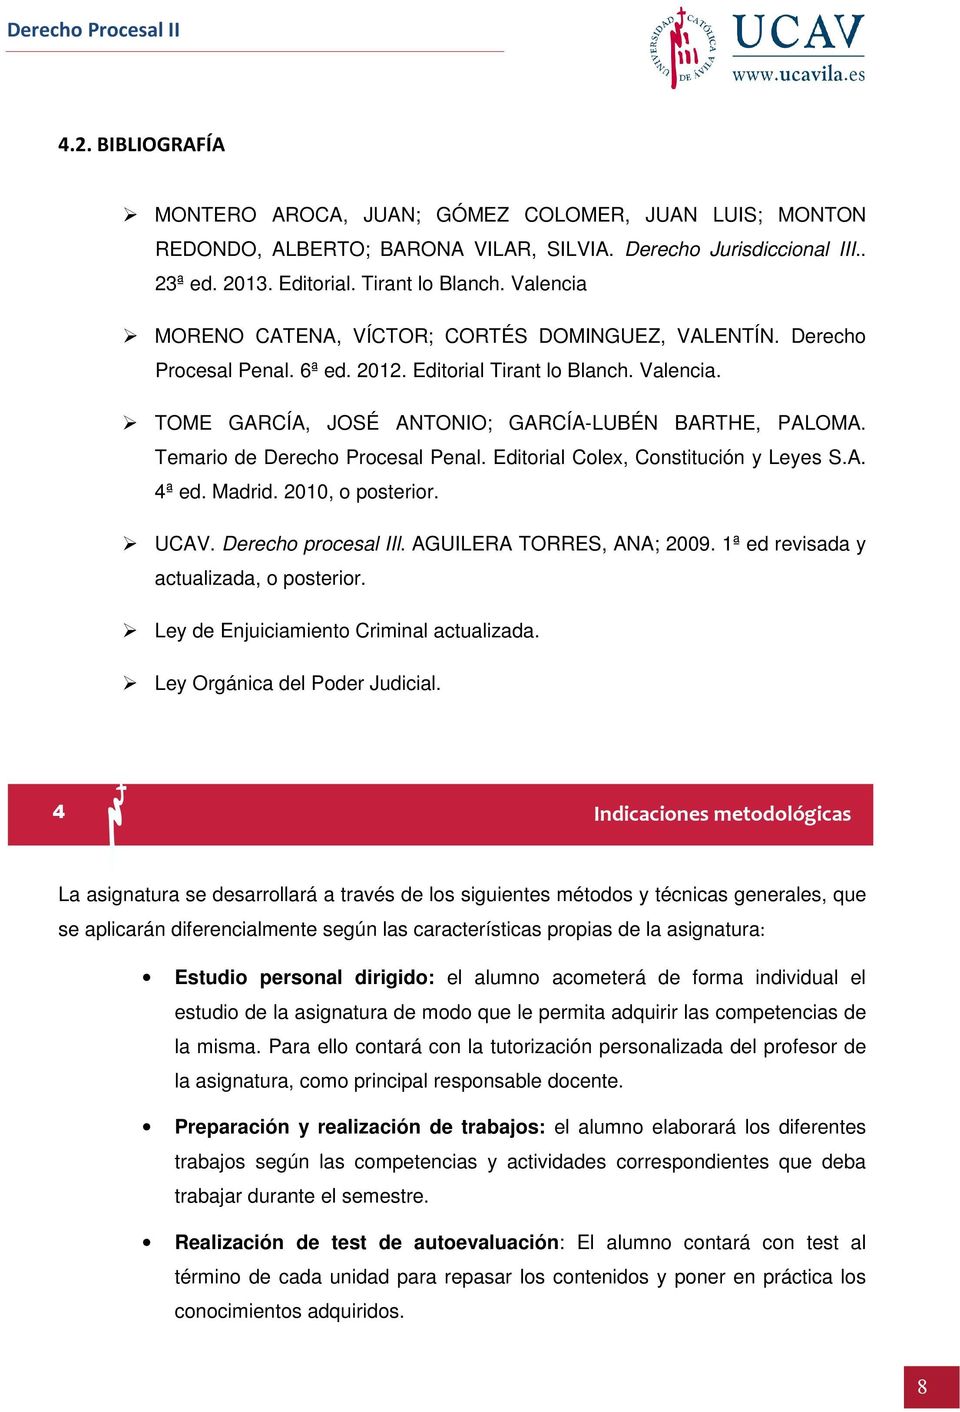 Temario de Derecho Procesal Penal. Editorial Colex, Constitución y Leyes S.A. 4ª ed. Madrid. 2010, o posterior. UCAV. Derecho procesal IIl. AGUILERA TORRES, ANA; 2009.